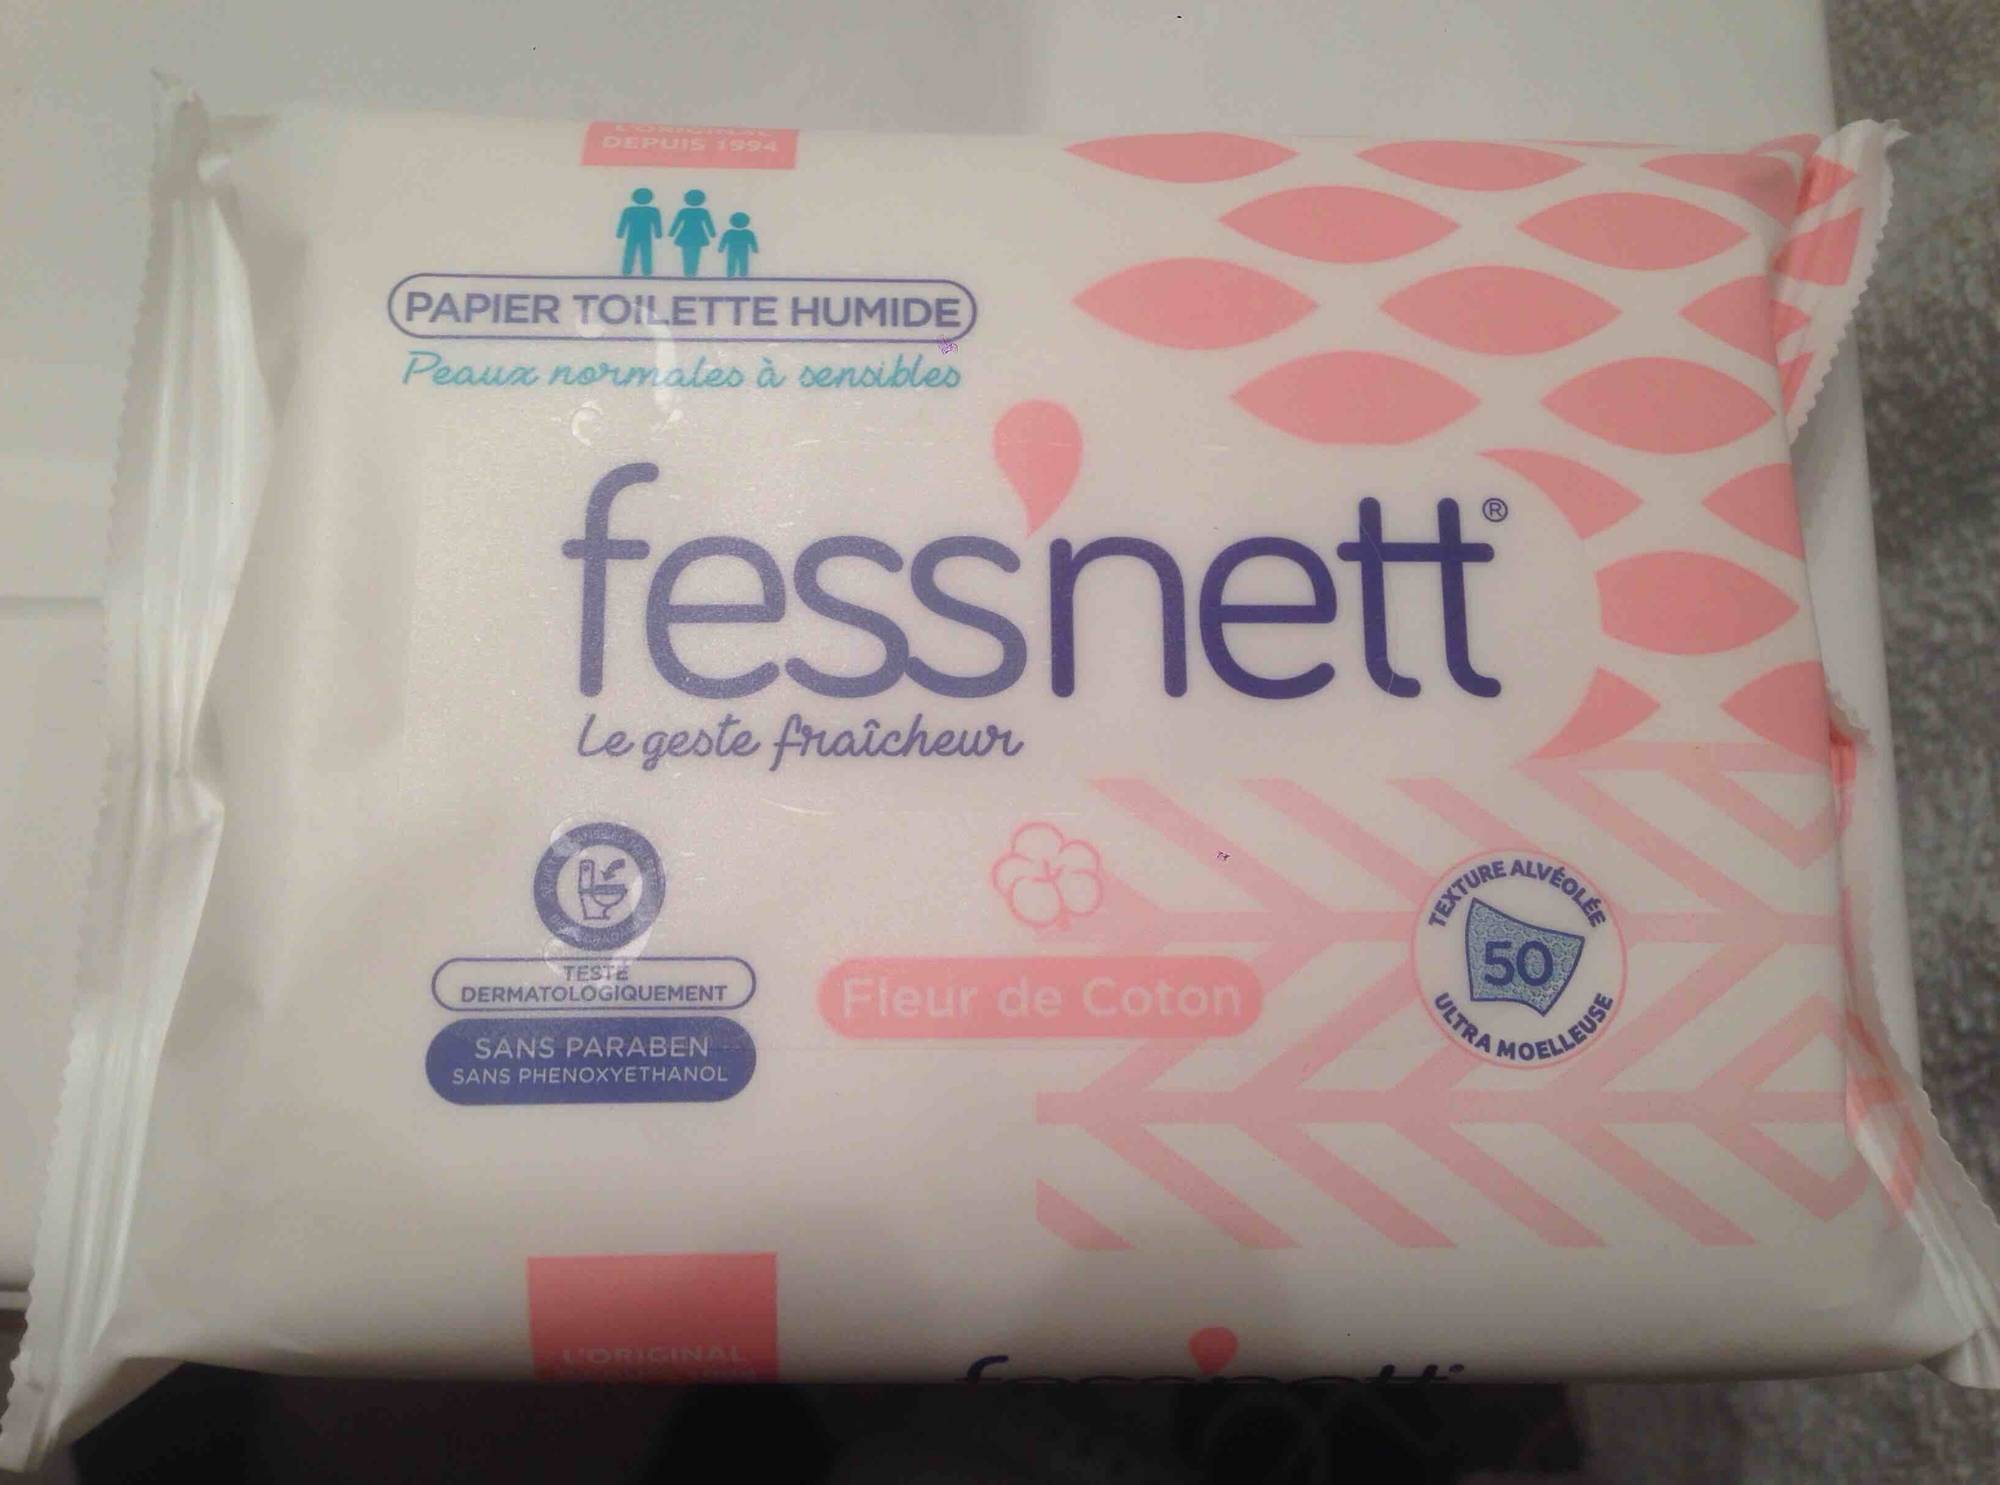 Fess'nett Pocket Papier Toilette Humide Peaux Normales 20 Lingettes Vert  Ylang (lot de 6) 